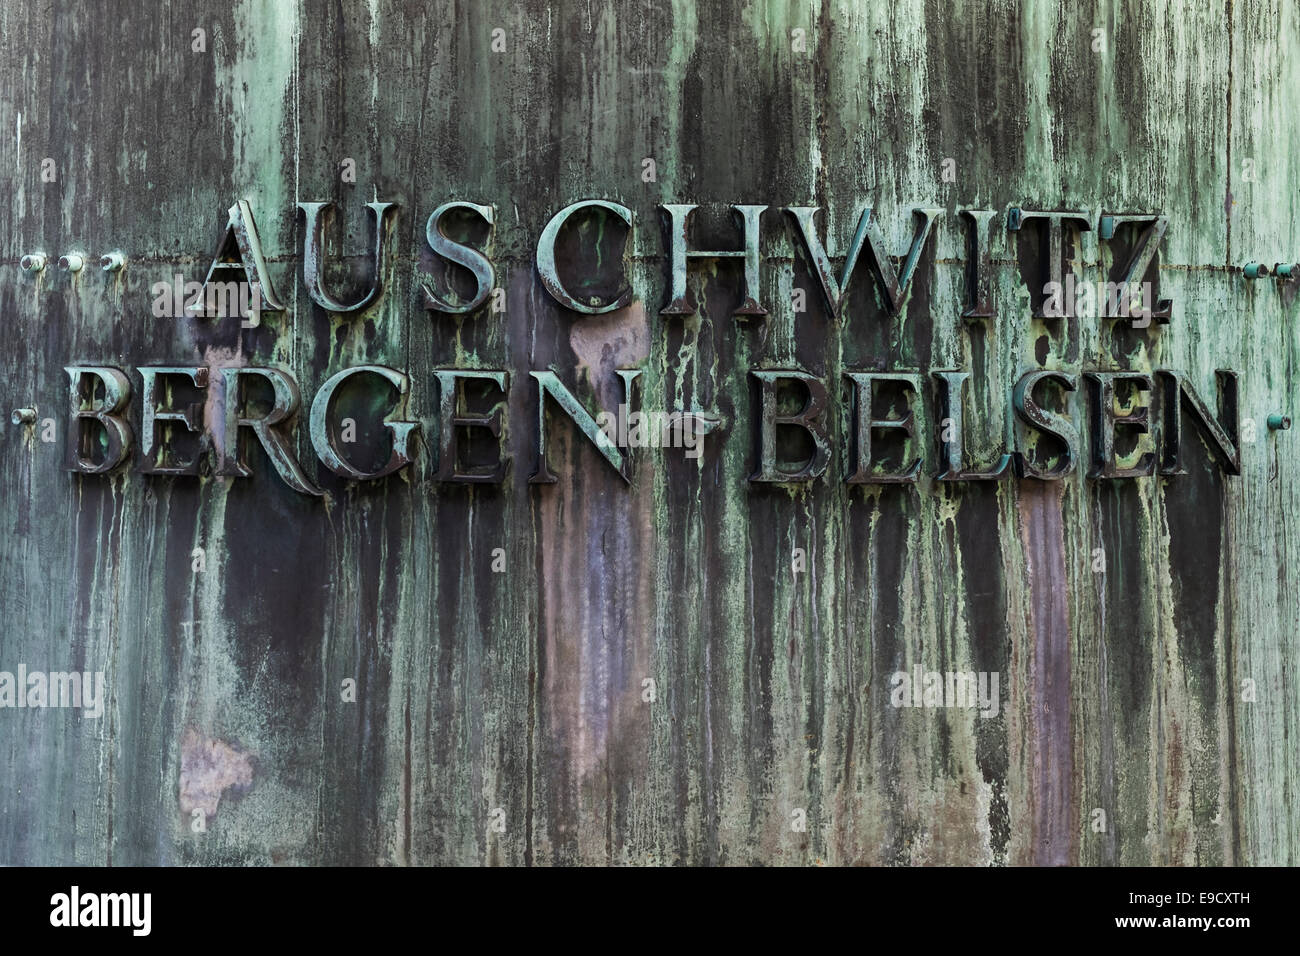 Cortile interno del monumento commemorativo dell'olocausto, iscrizione dei nomi dei campi di sterminio di Auschwitz e bergen-belsen Foto Stock